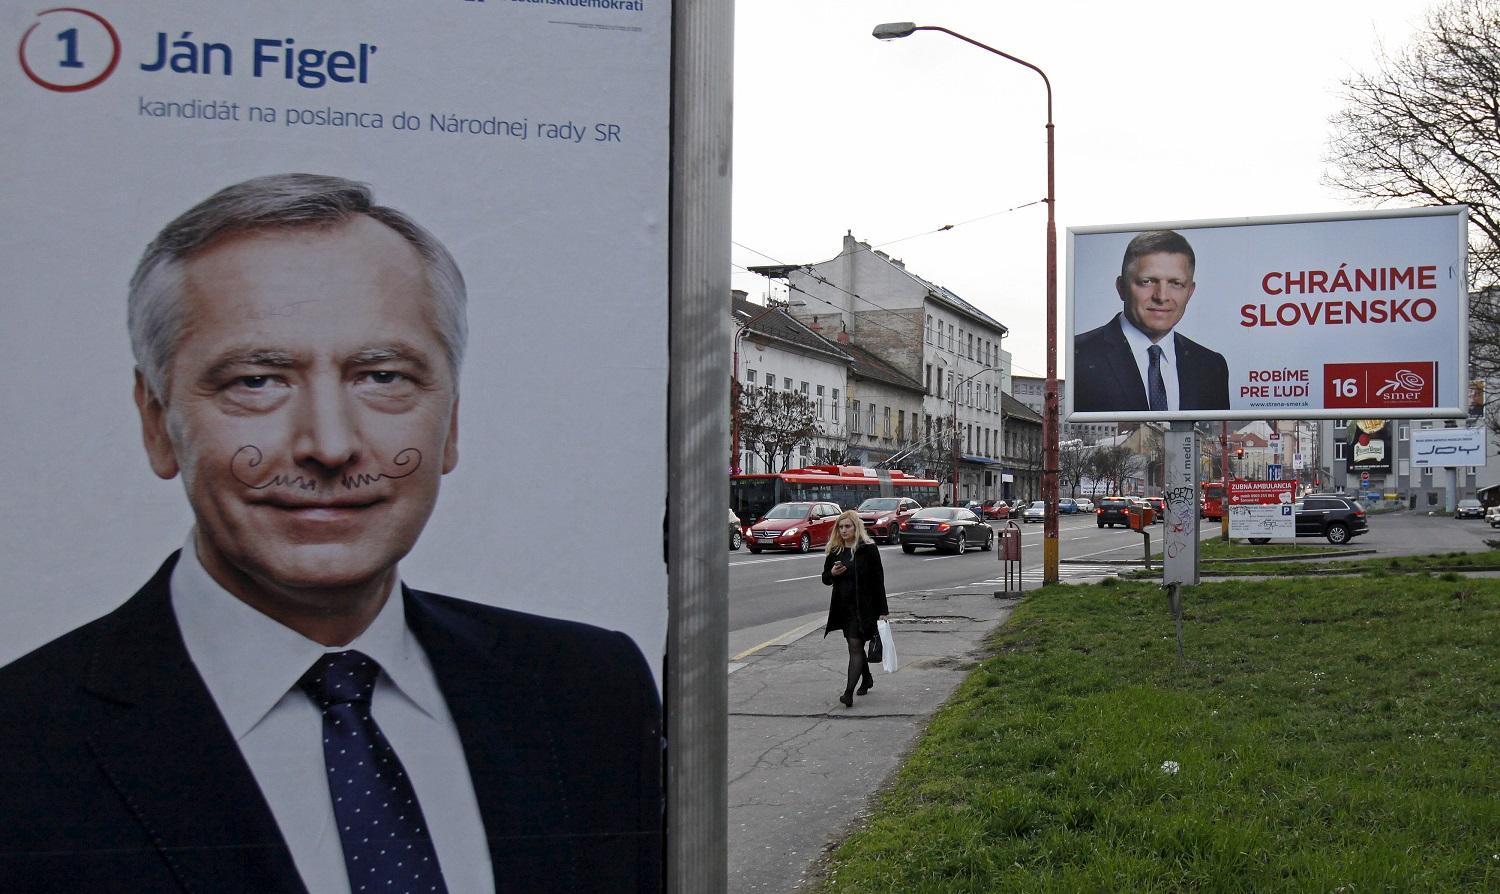 Figel bajusszal. Hátul a SMER-SD plakátja Robert Ficoval. Megvédené Szlovákiát